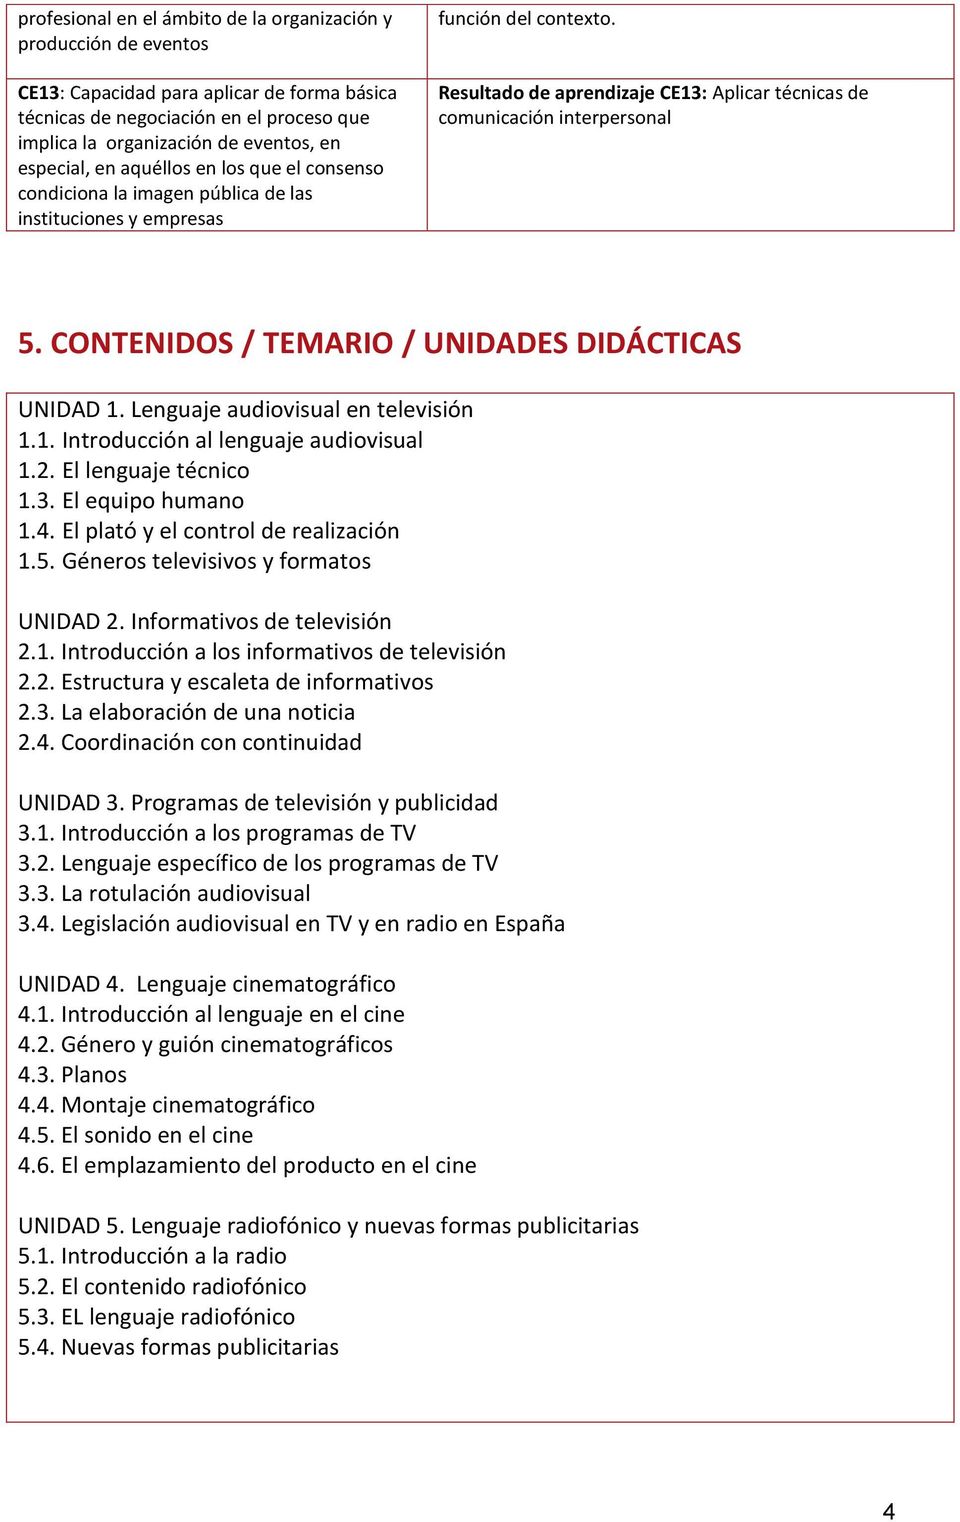 Resultado de aprendizaje CE13: Aplicar técnicas de comunicación interpersonal 5. CONTENIDOS / TEMARIO / UNIDADES DIDÁCTICAS UNIDAD 1. Lenguaje audiovisual en televisión 1.1. Introducción al lenguaje audiovisual 1.